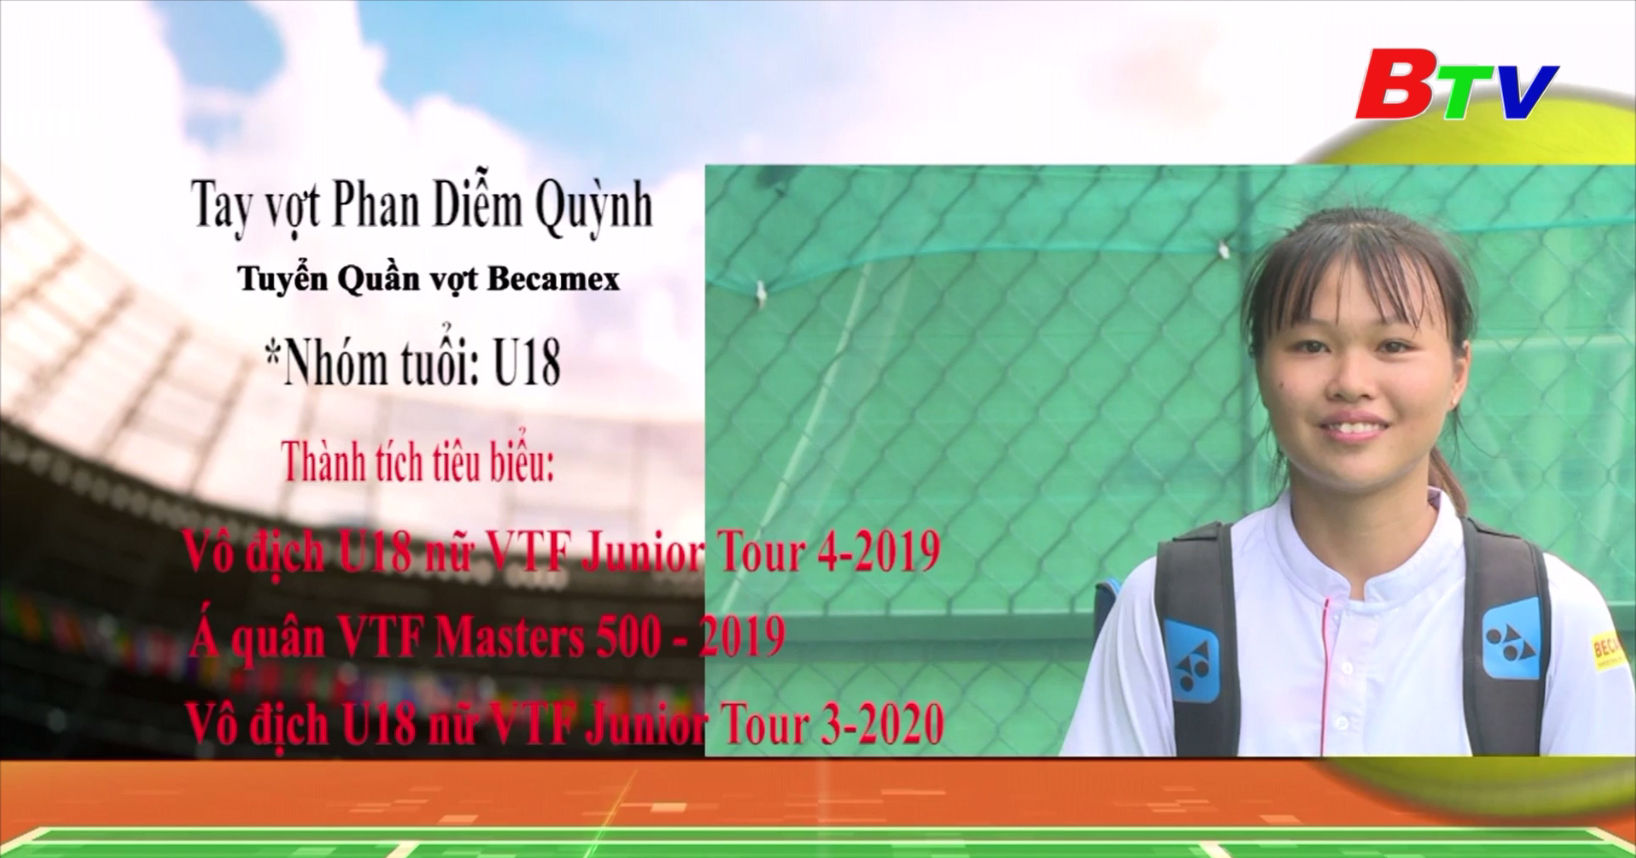 Chân dung tay vợt Phan Diễm Quỳnh - Đội tuyển quần vợt Becamex Bình Dương